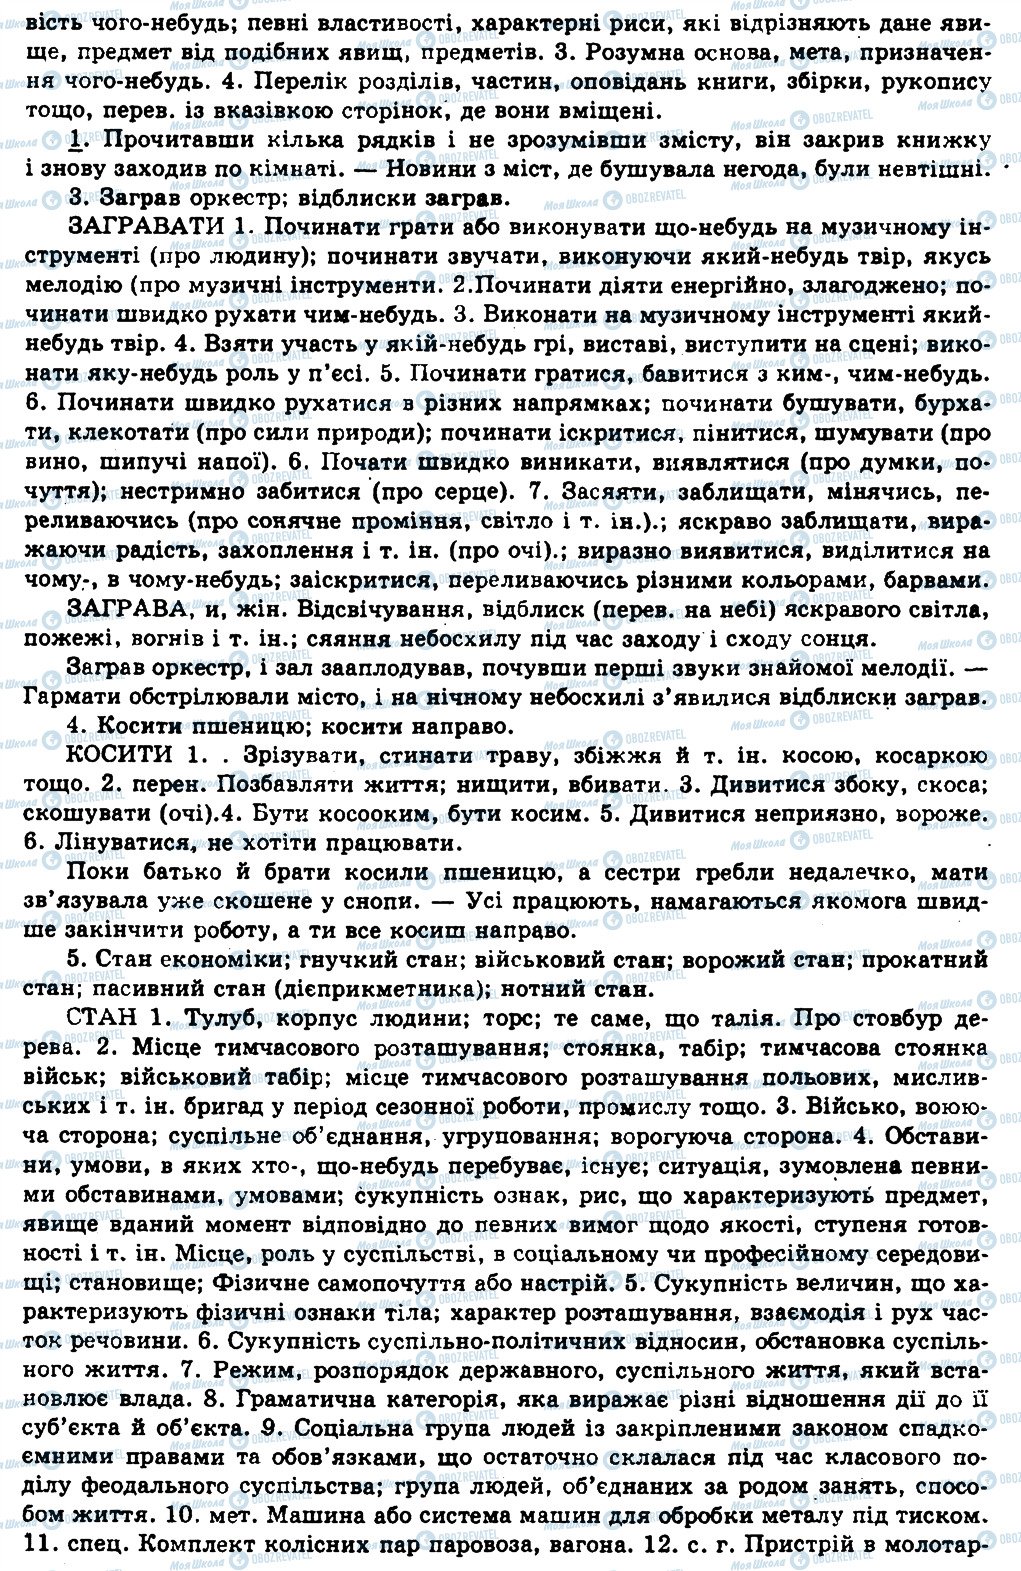 ГДЗ Українська мова 11 клас сторінка 423